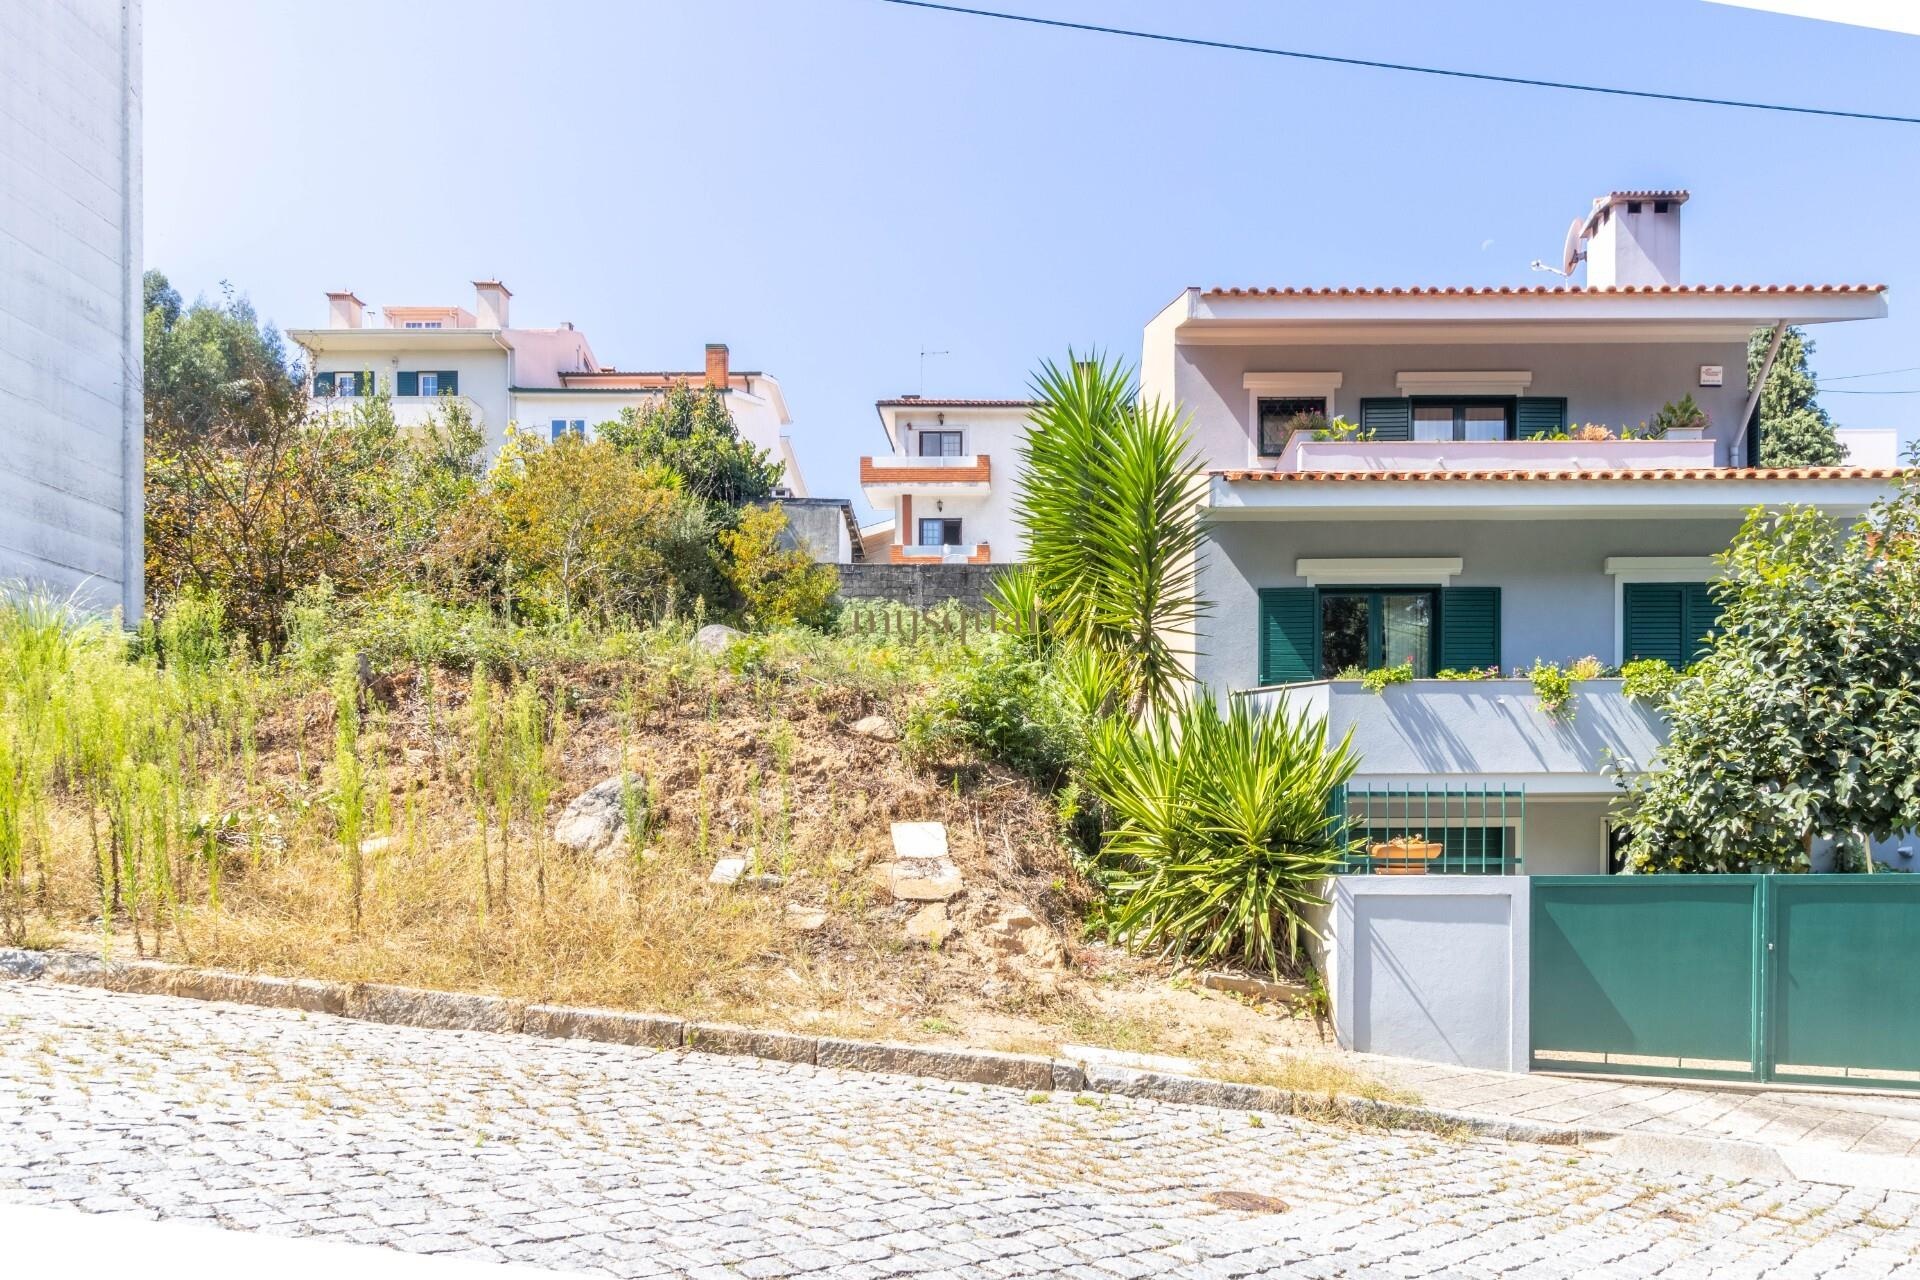 Terreno para construção de moradia de 3 Frentes e 3 Pisos em Canelas, Gaia, Porto